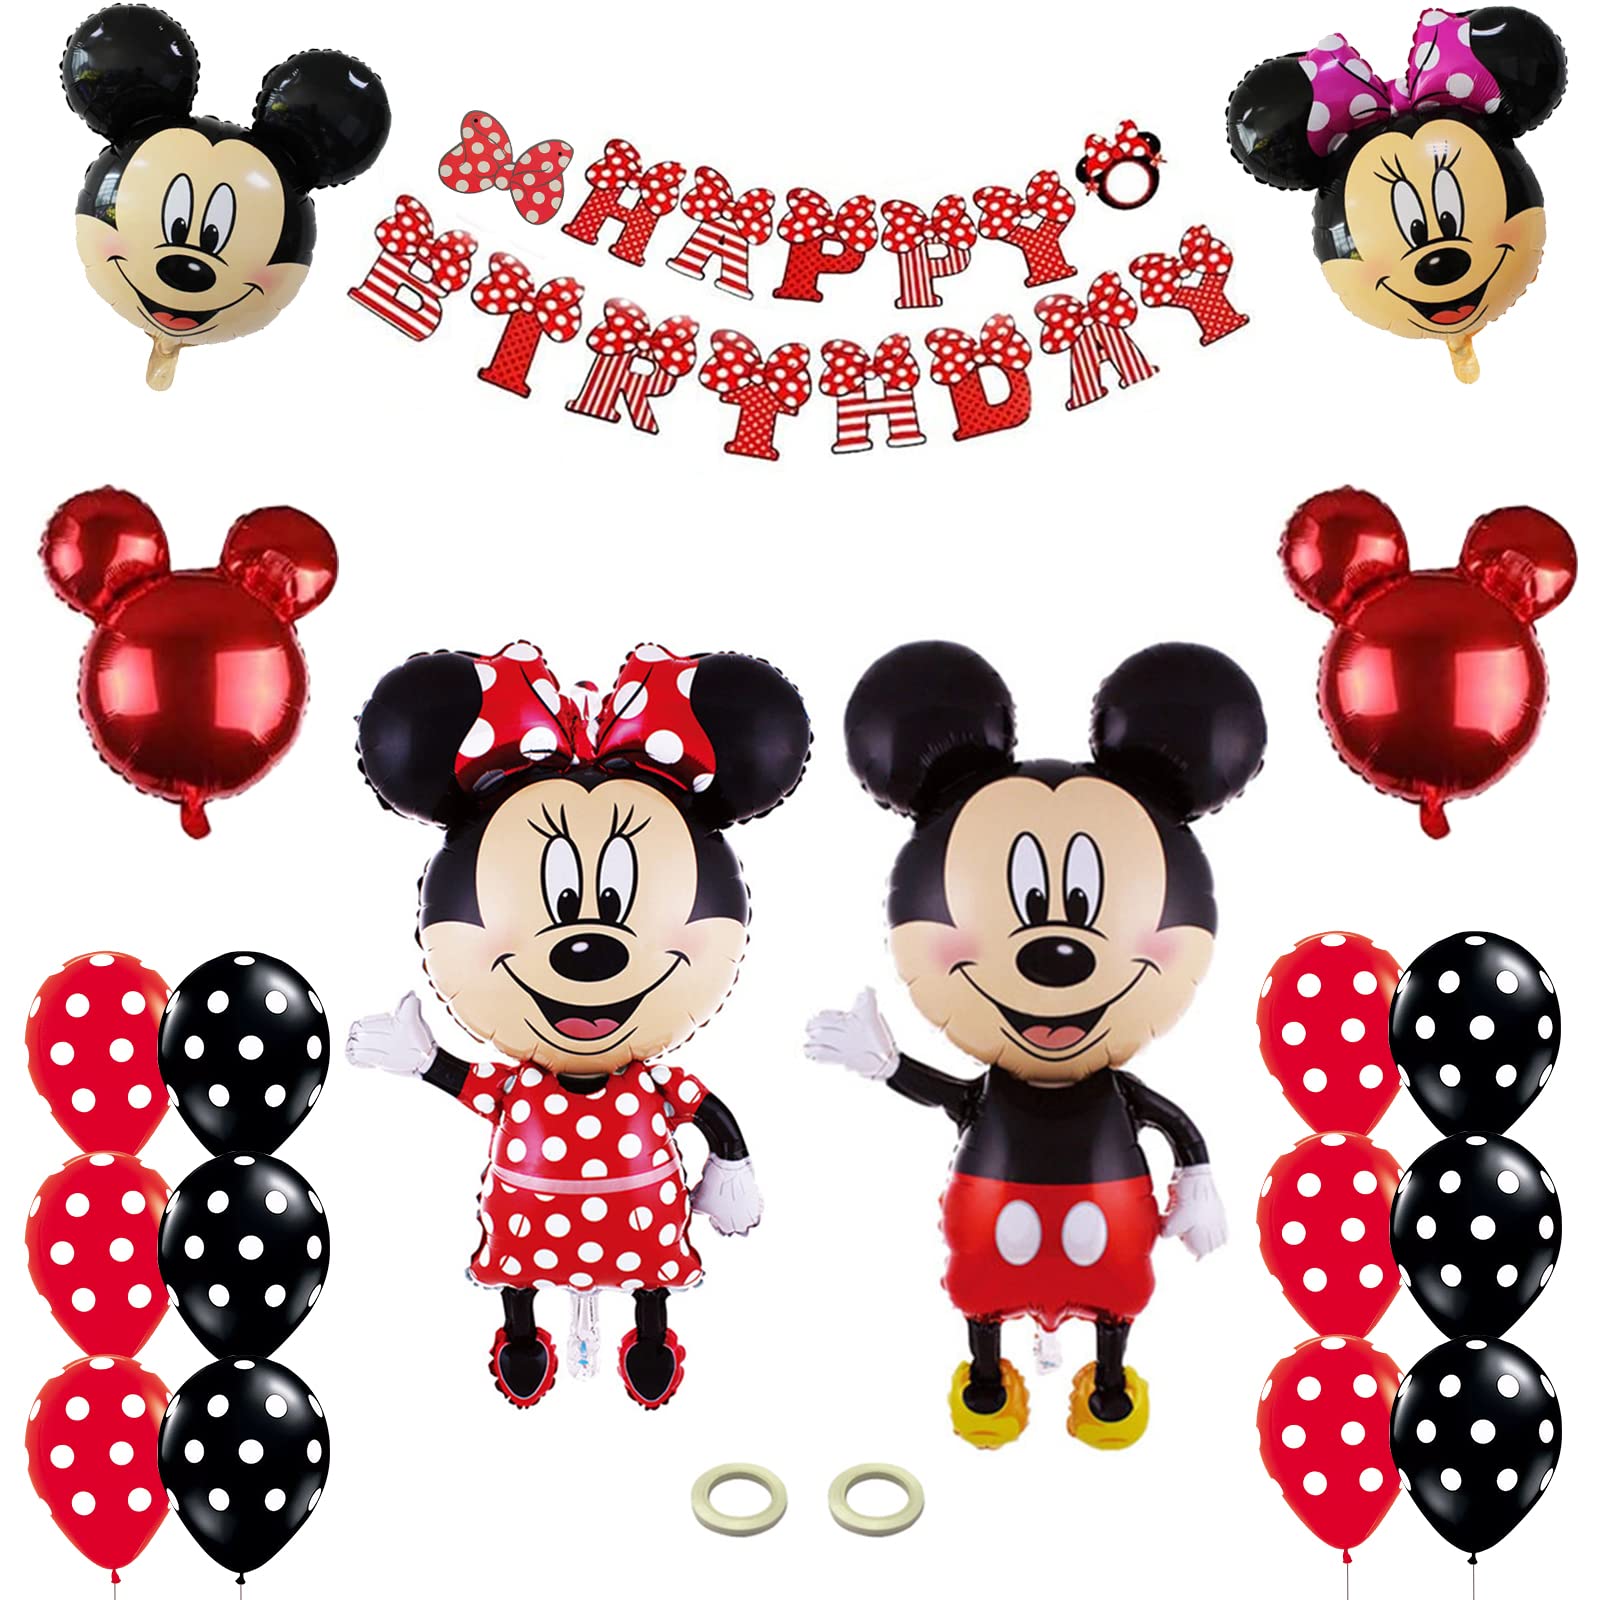 Mickey y Minnie con globos y confeti